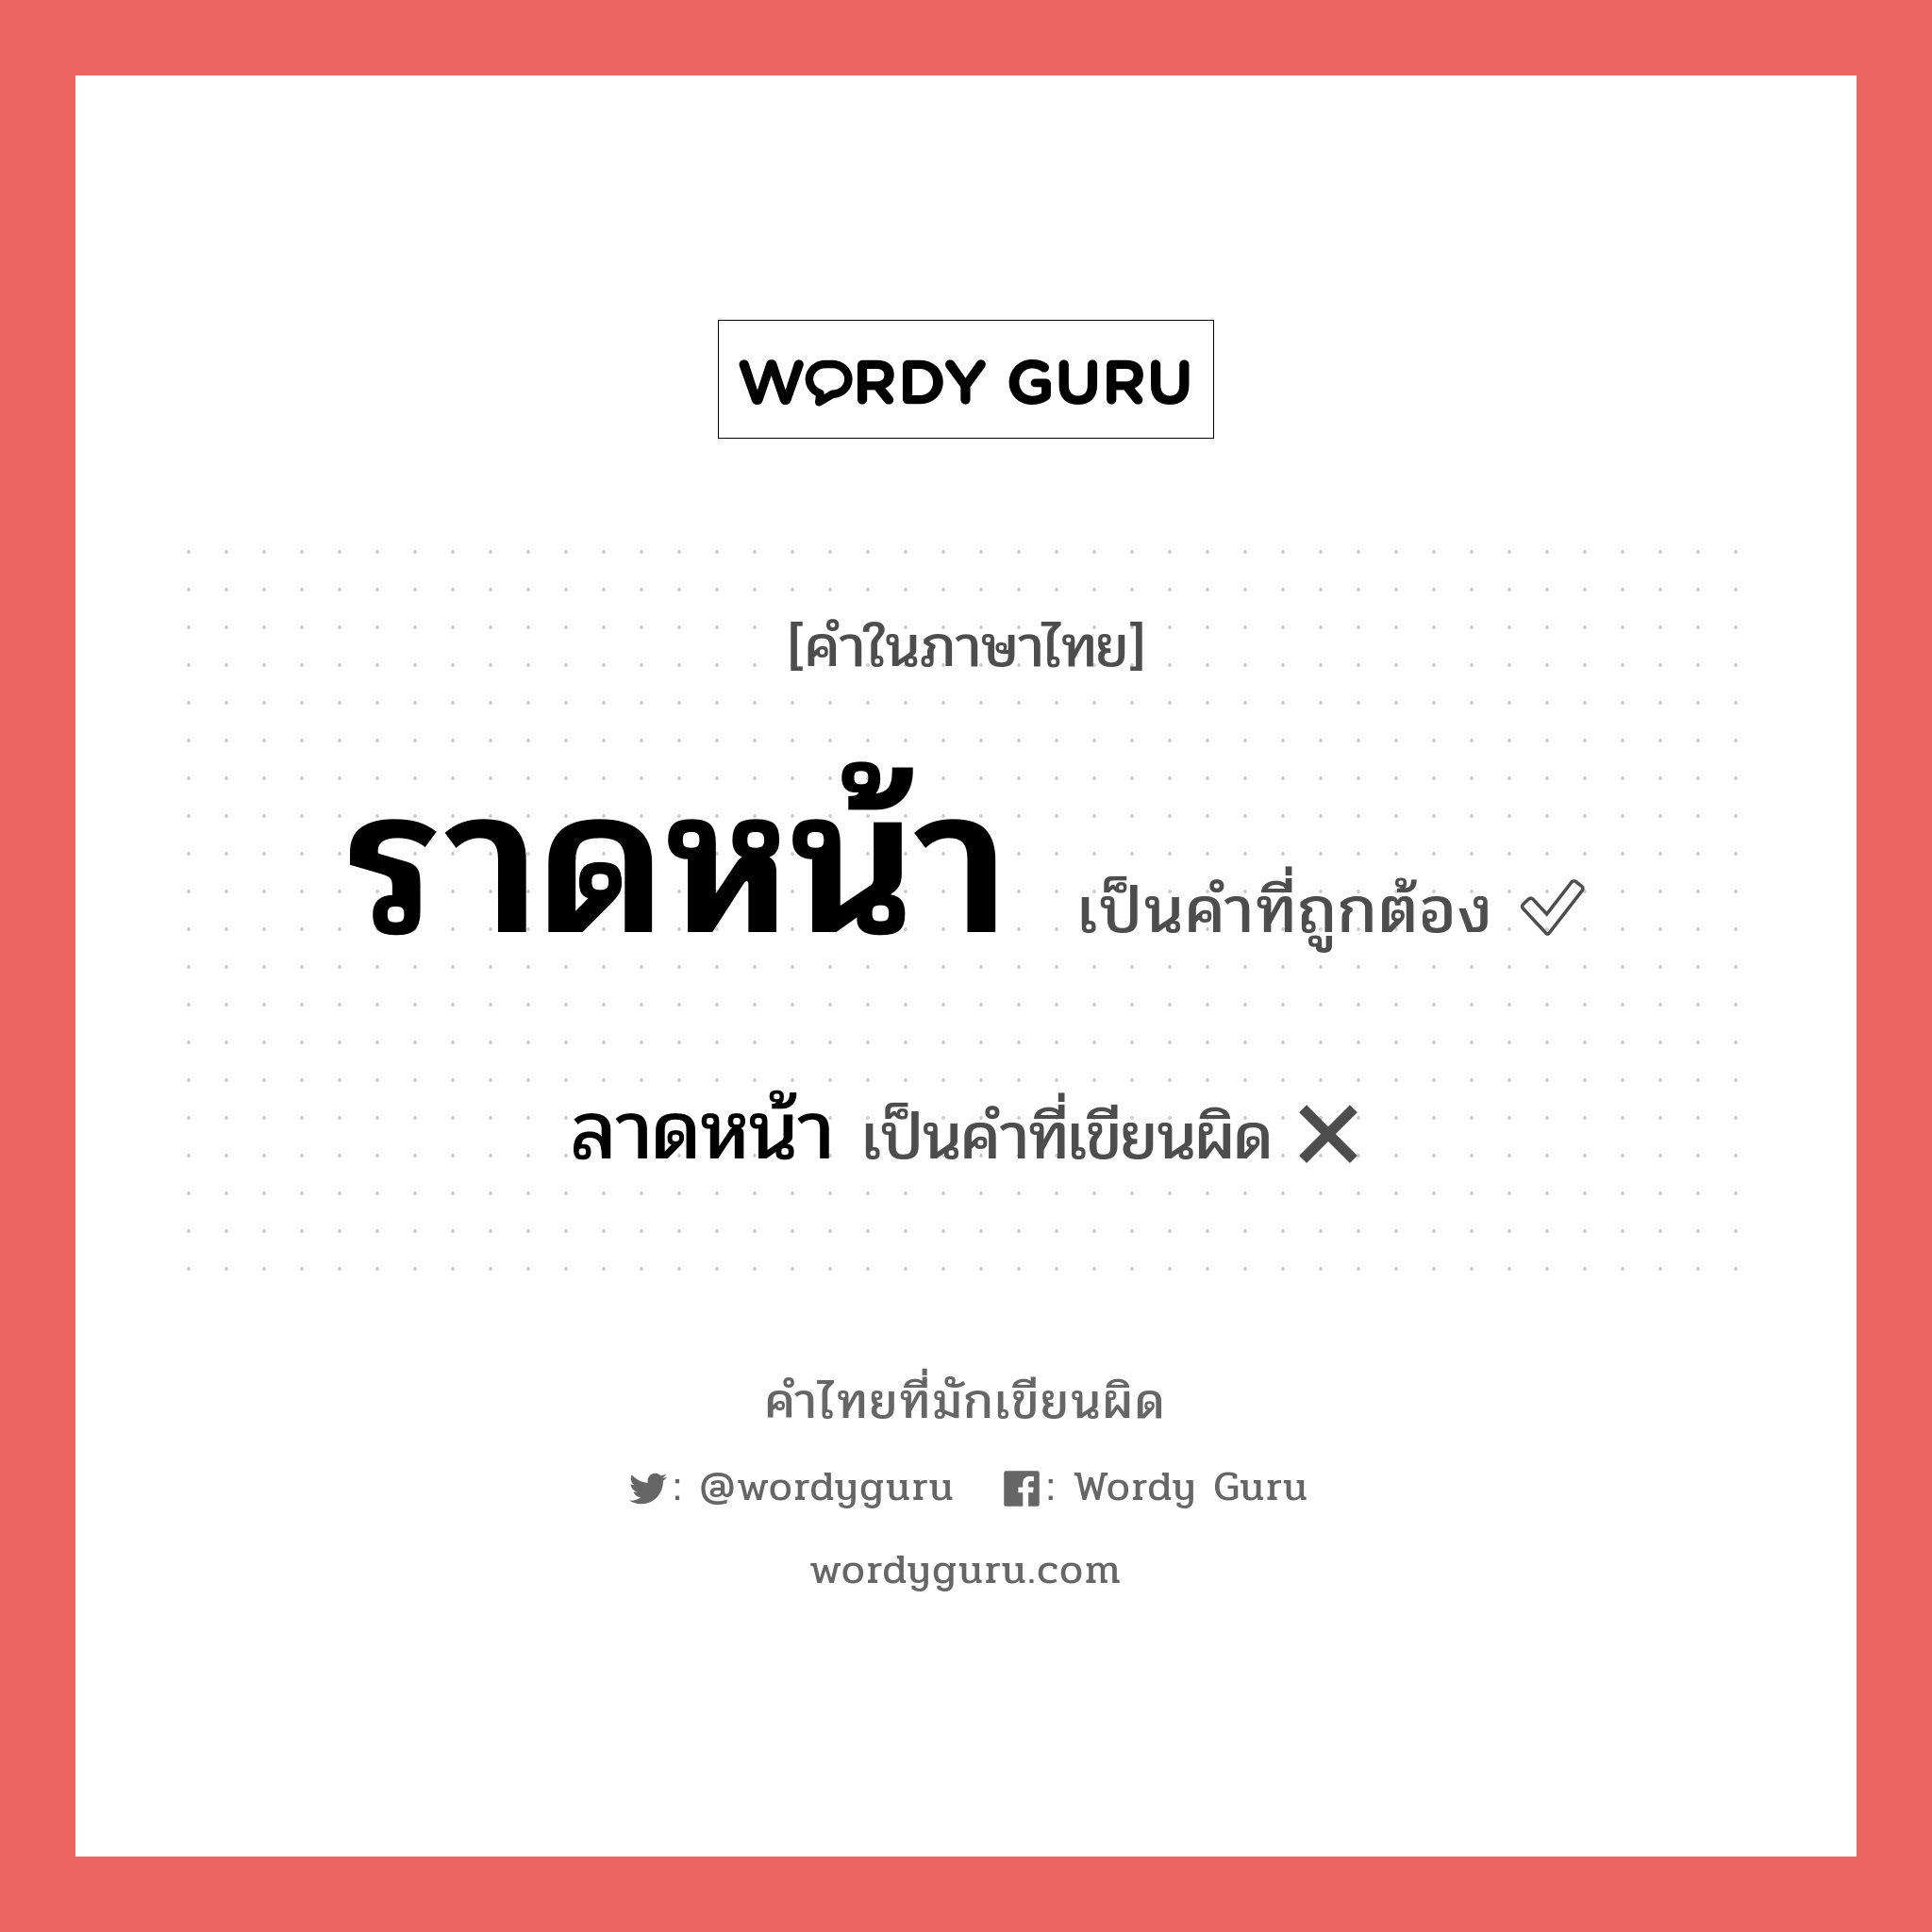 ราดหน้า หรือ ลาดหน้า คำไหนเขียนถูก?, คำในภาษาไทยที่มักเขียนผิด ราดหน้า คำที่ผิด ❌ ลาดหน้า